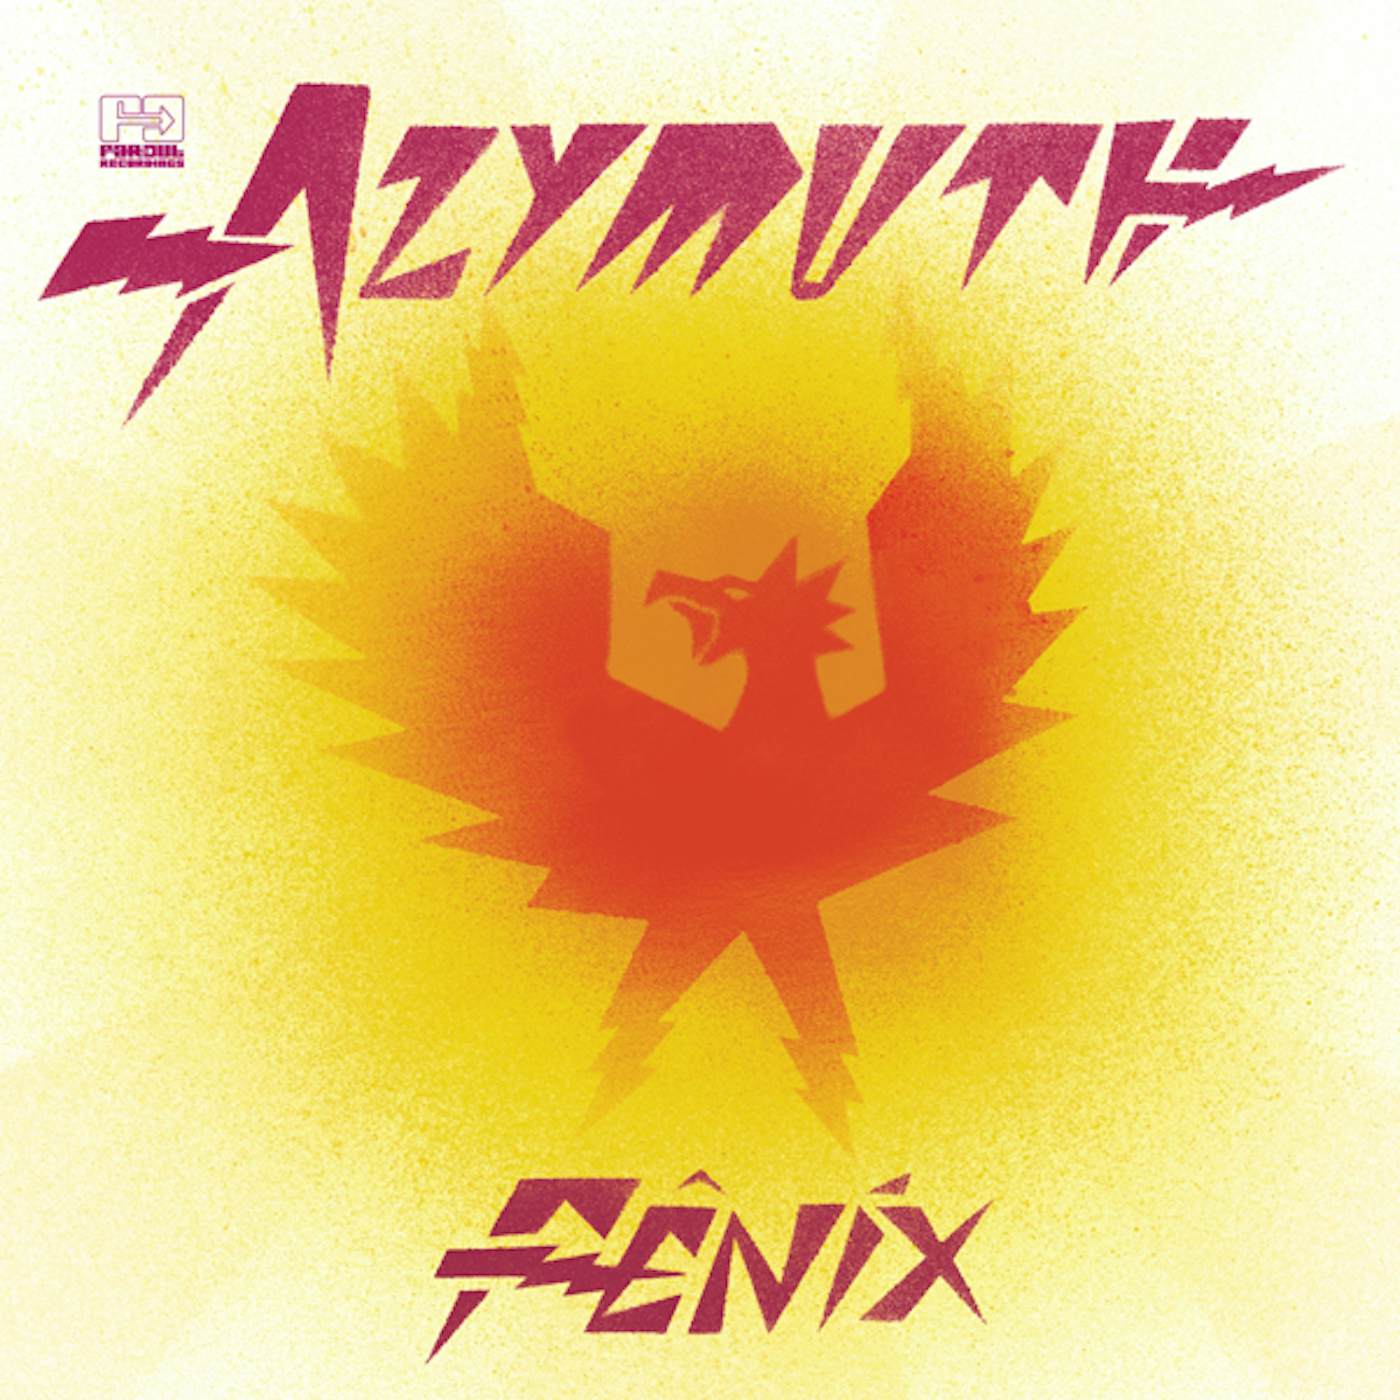 Azymuth FENIX CD